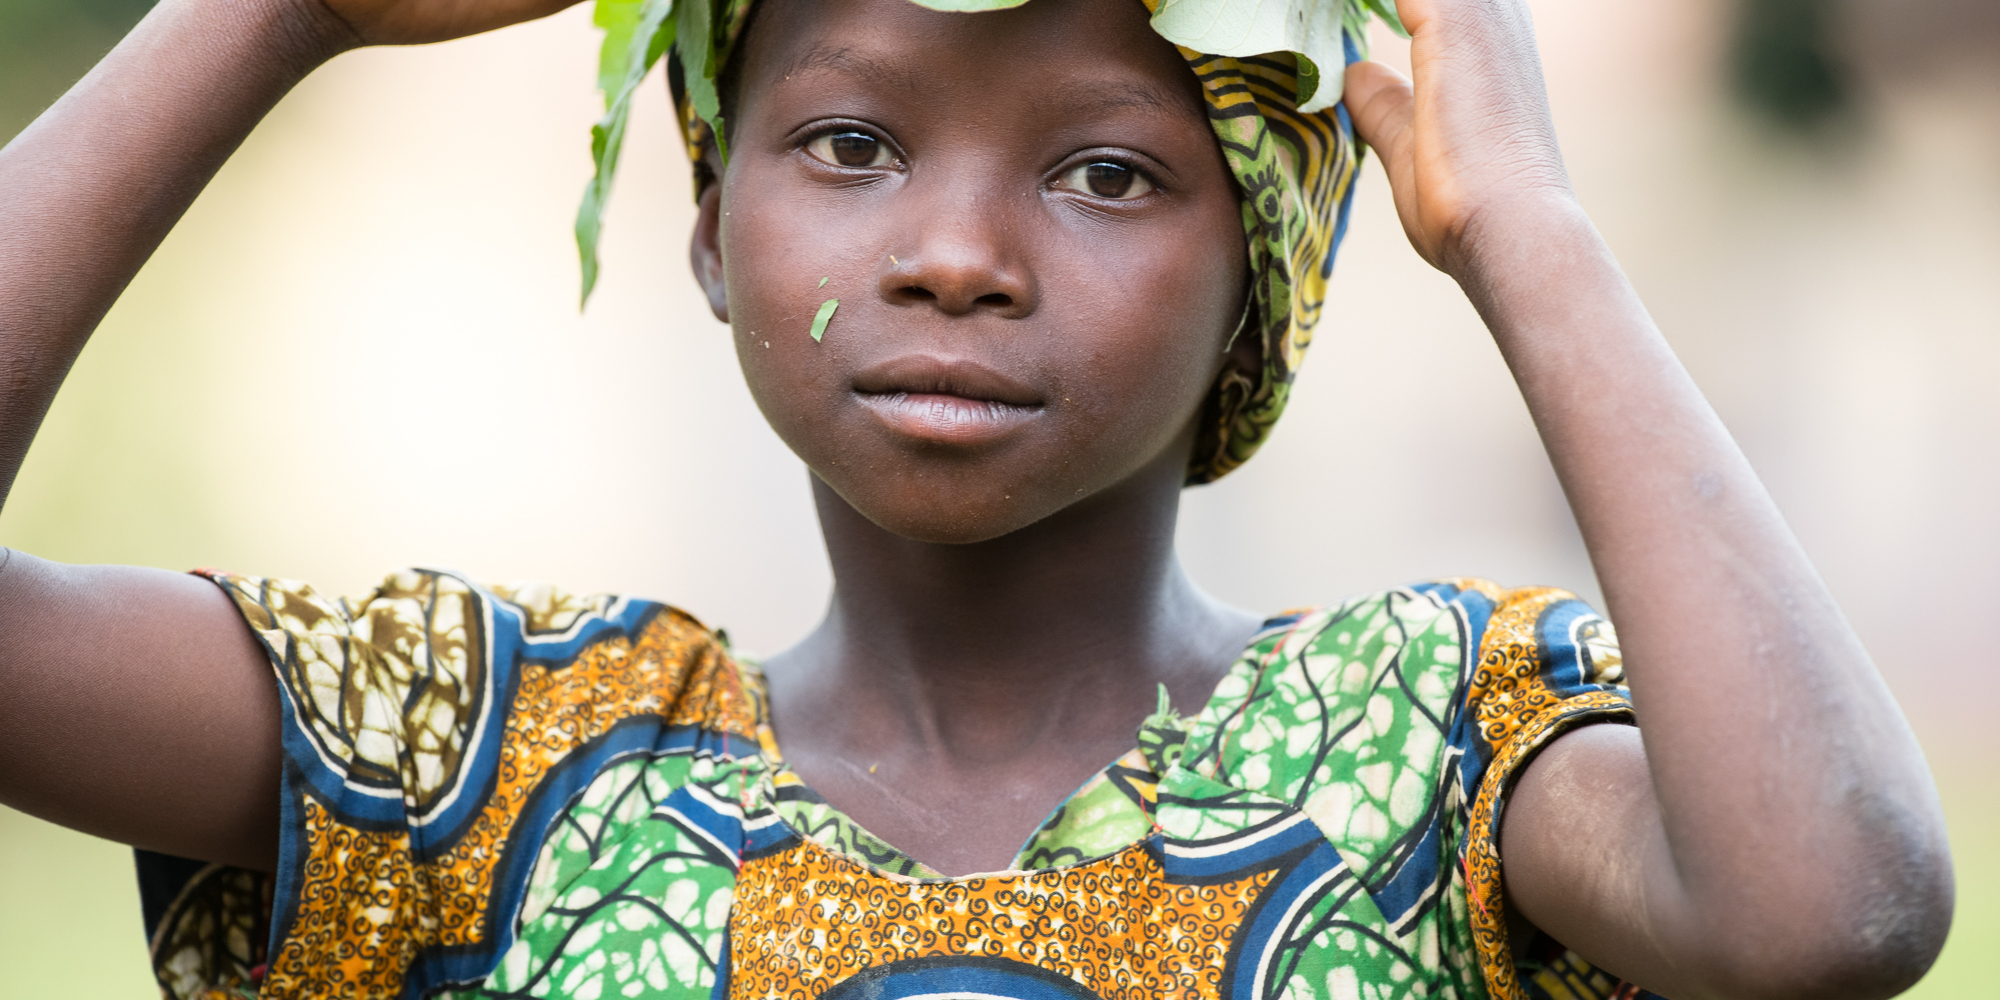 La grande ouverture de diaphragme permet d'obtenir une photo avec un faible profondeur de champs, mettant ici en valeur le visage de cet enfant Camerounais. 